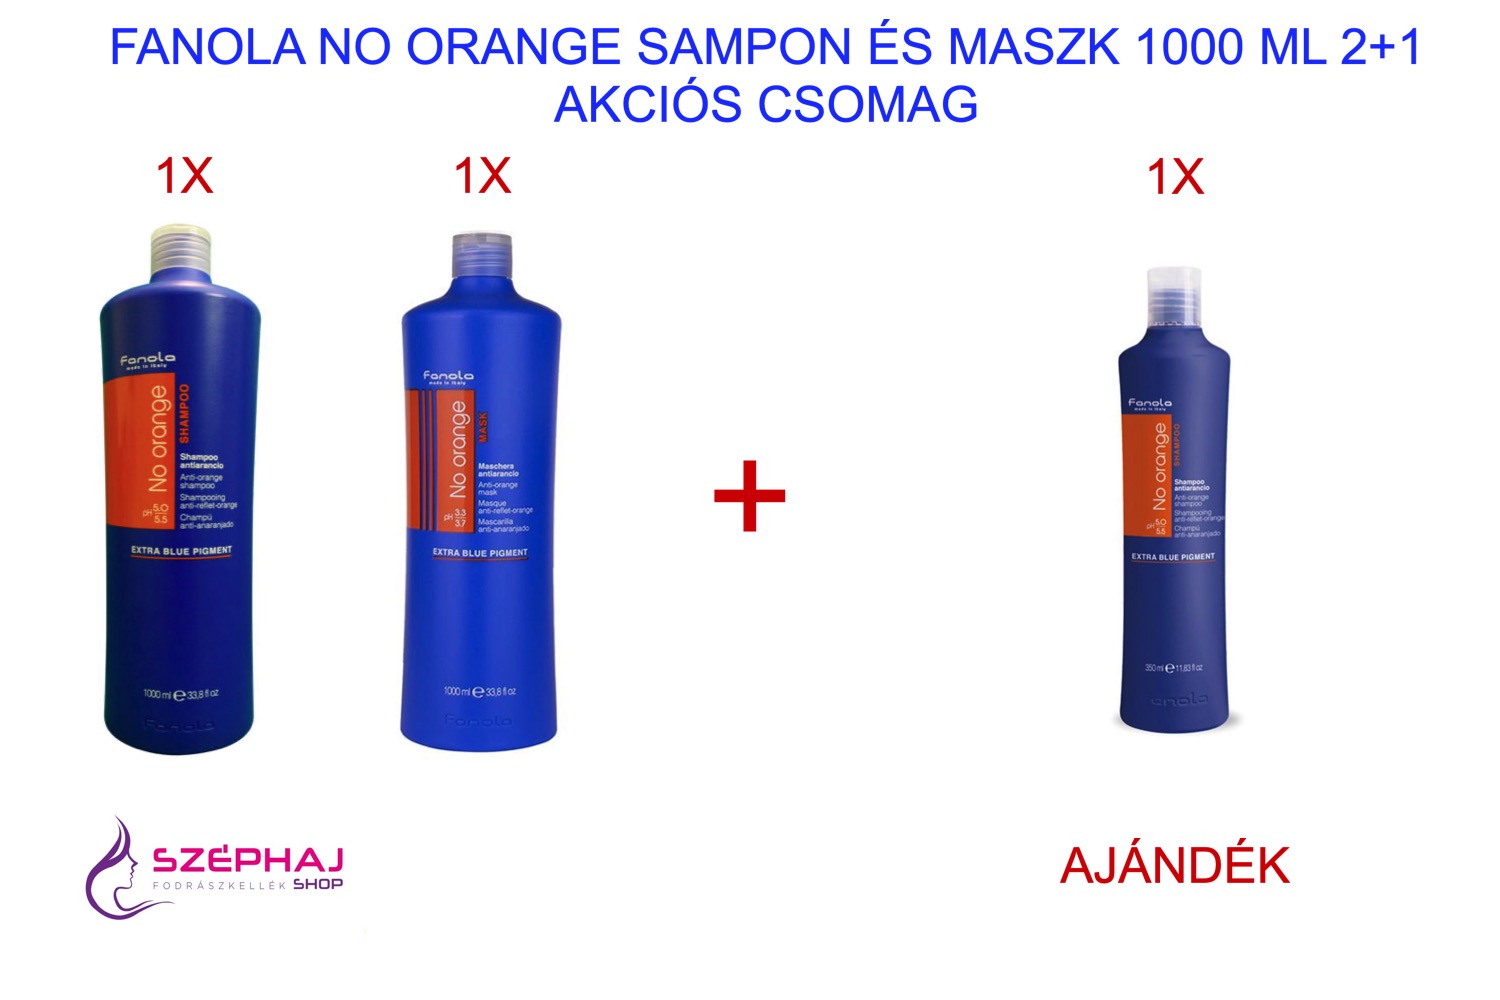 FANOLA No Orange Sampon és Maszk 1000 ml 2+1 AKCIÓ